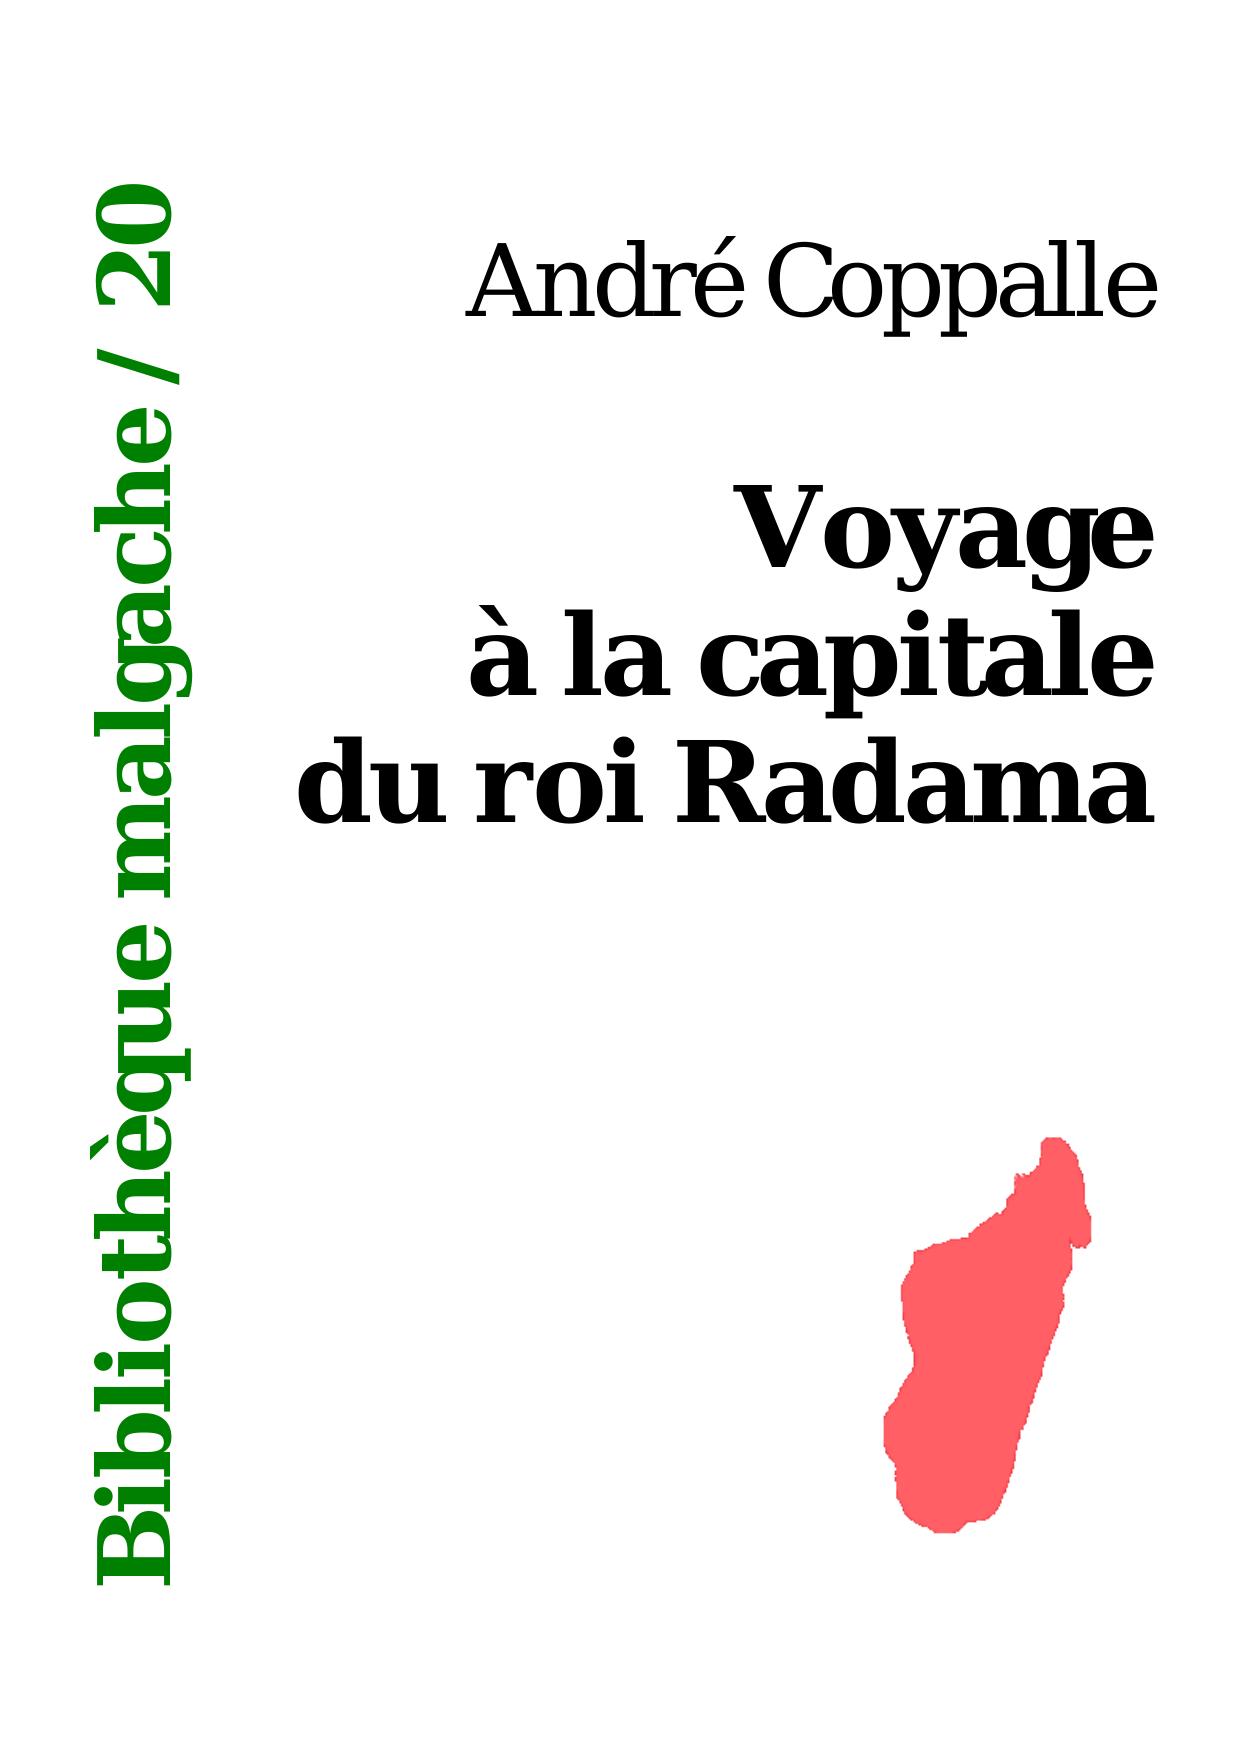 Microsoft Word - coppalle_voyage_a_la_capitale.doc